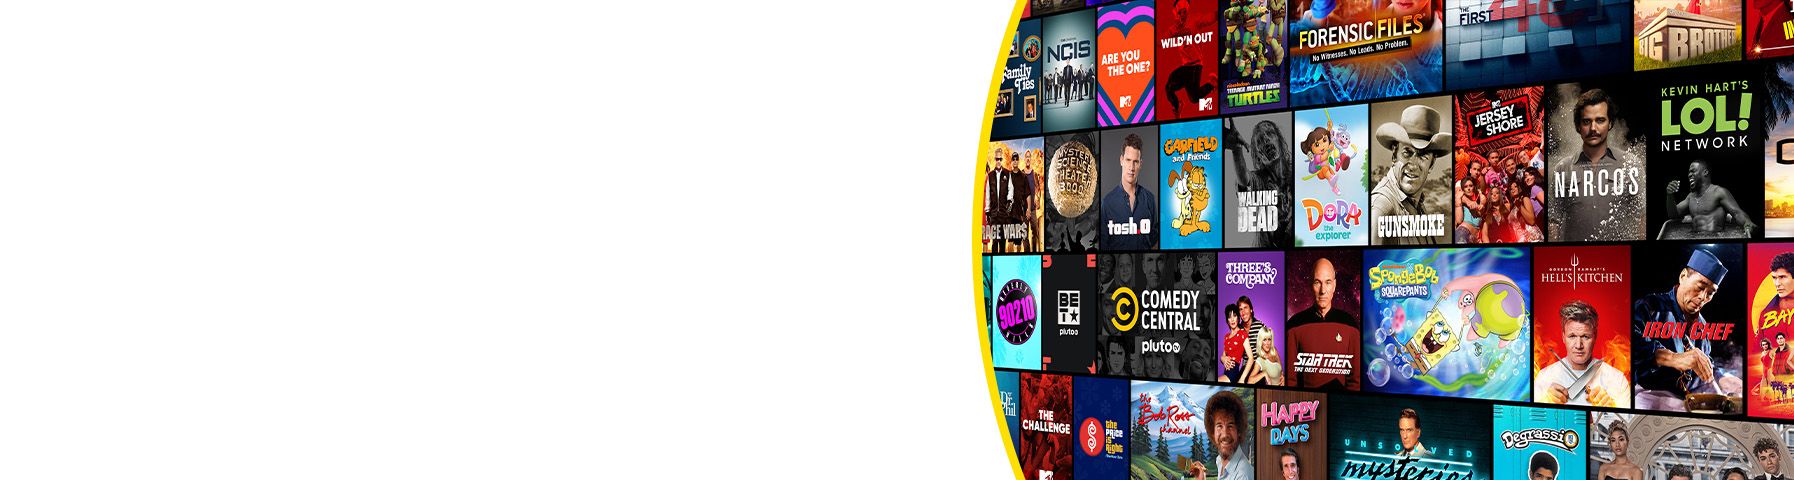 Una selección de programas de TV y películas disponibles en Pluto TV.